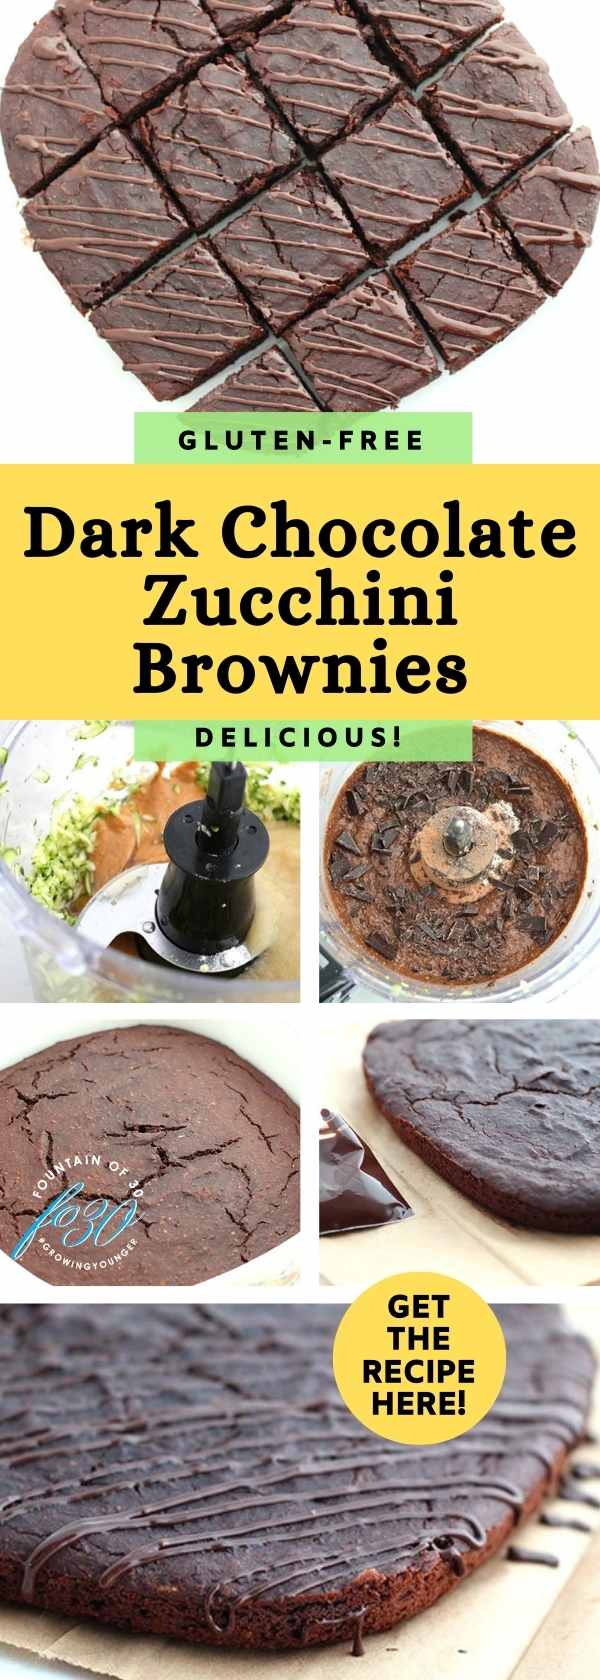 Gluten Free Zucchini Brownies fountainof30